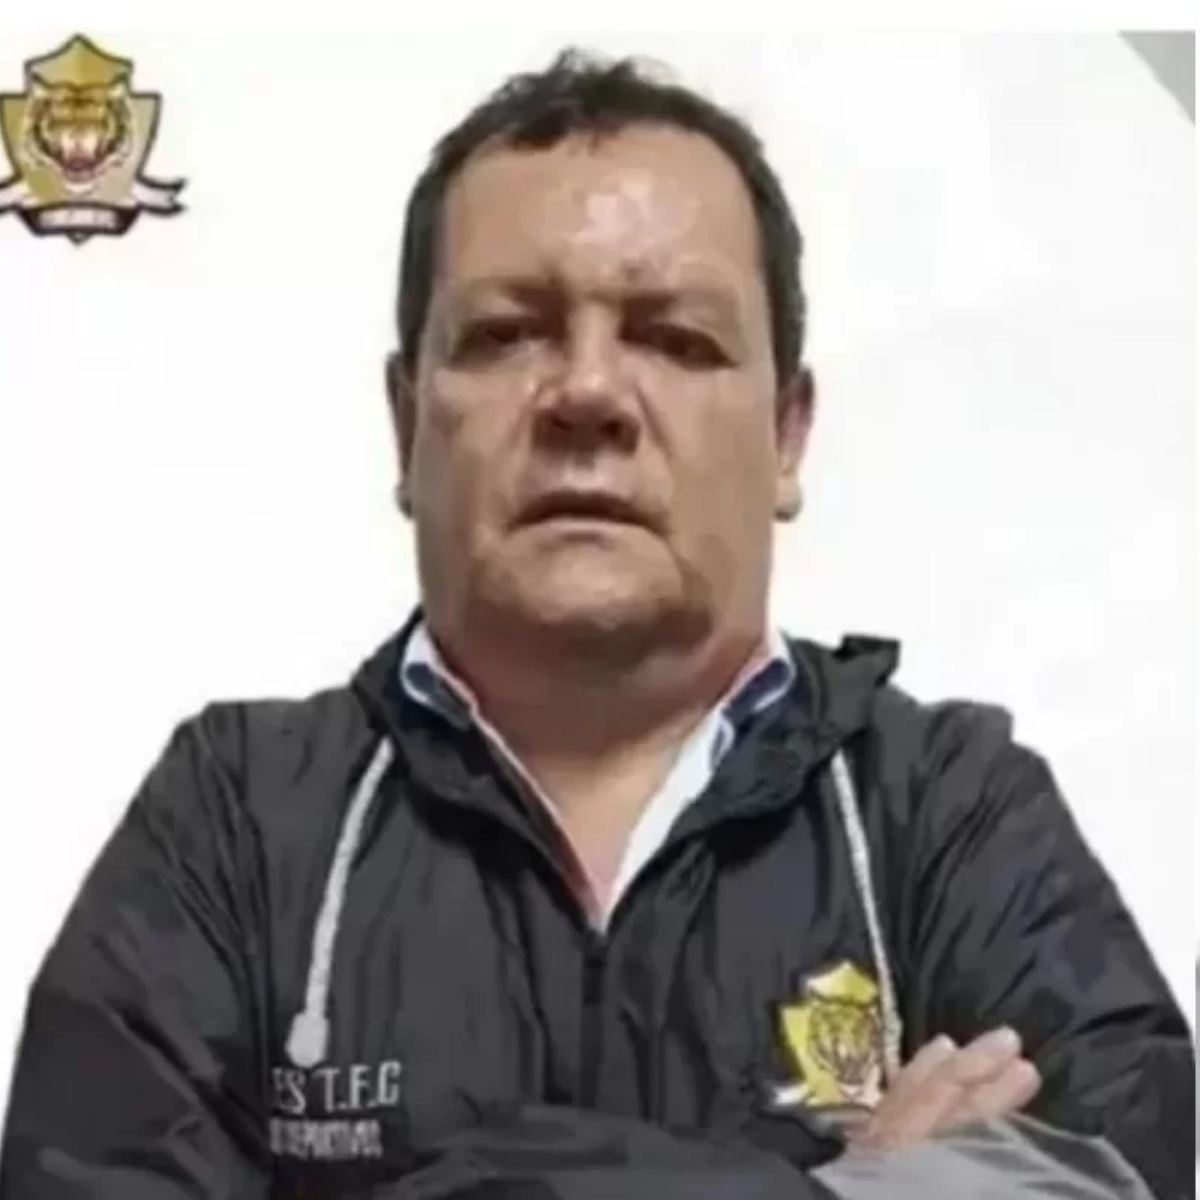  Edgar Paez, presidente do Tigres, clube da segunda divisão colombiana, foi morto a tiros após uma derrota da equipe no sábado (23), informou o clube. 